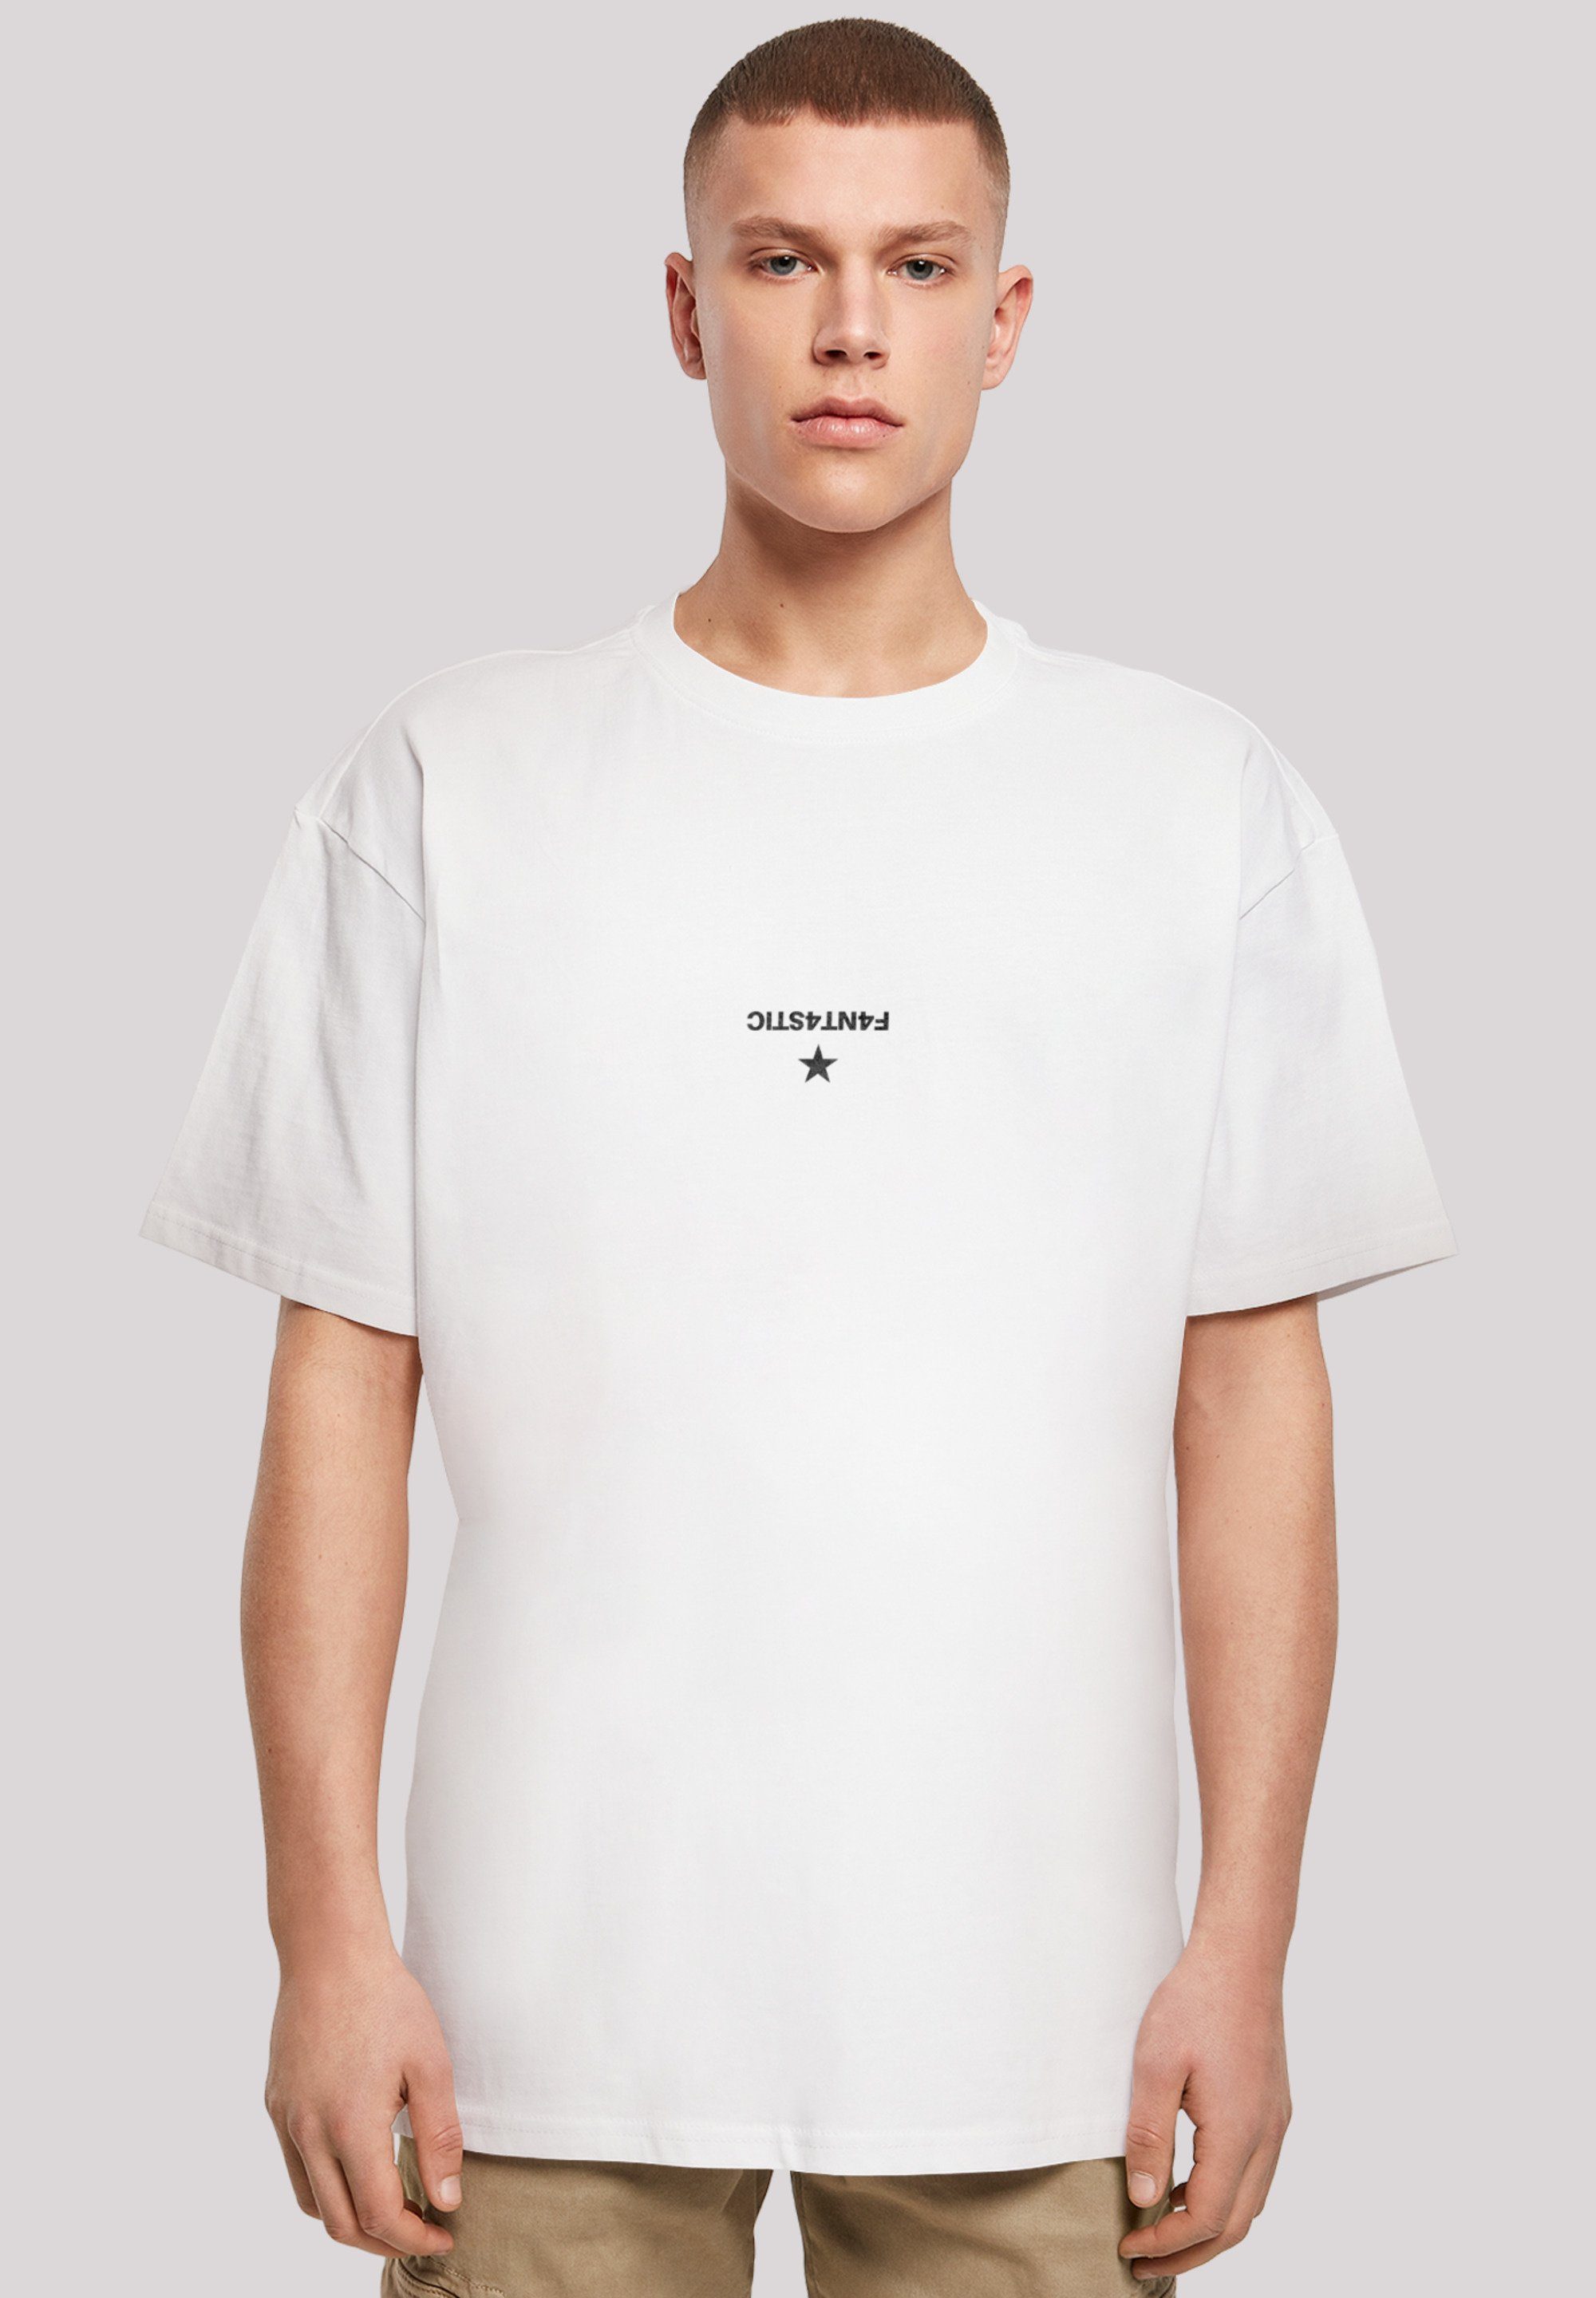 Geometric T-Shirt F4NT4STIC weiß Grau Print